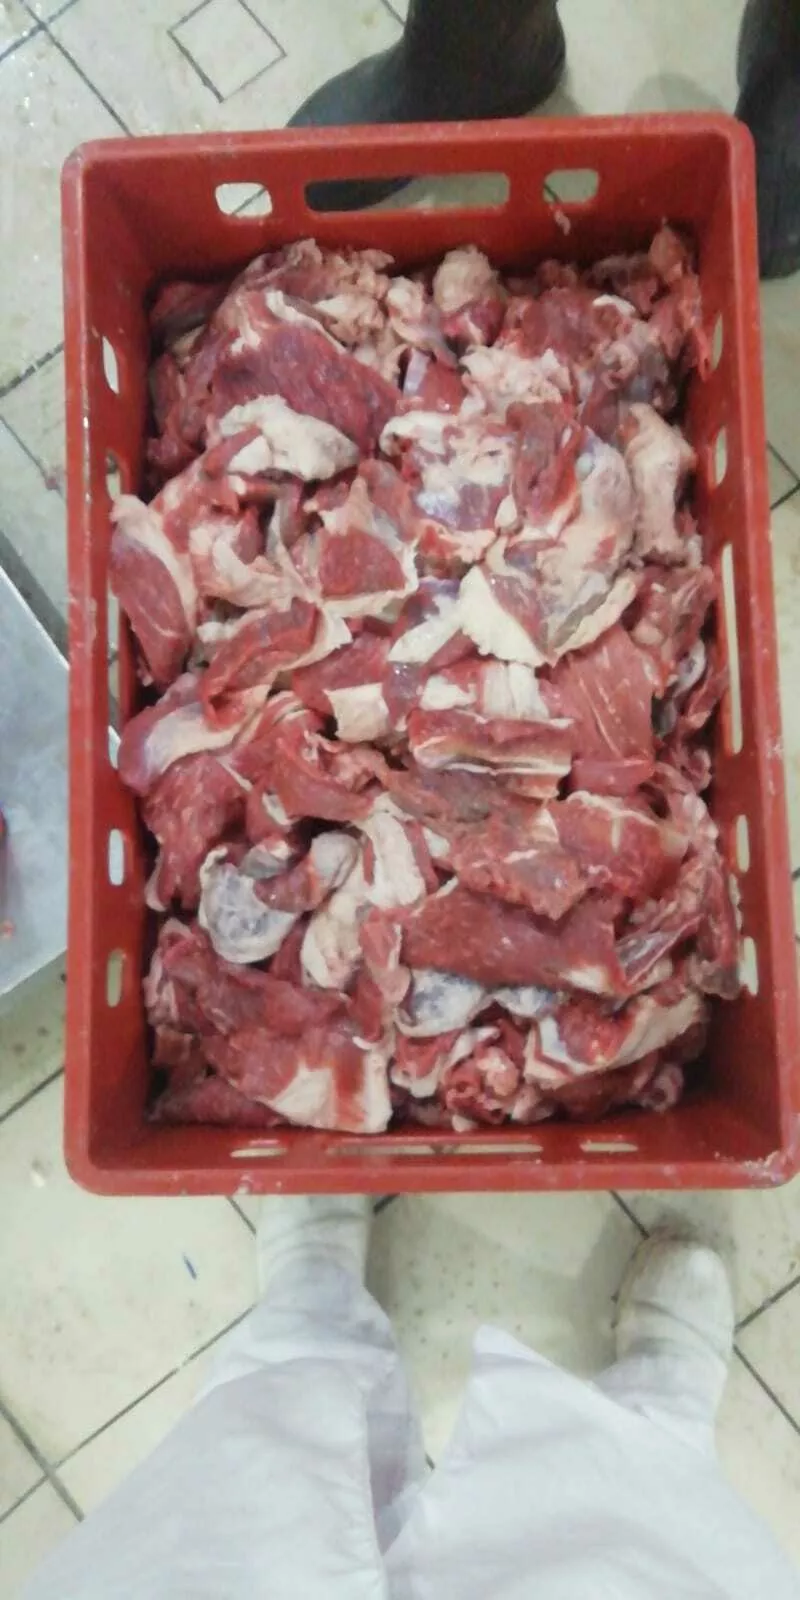 котлетное мясо (2 сорт) сто в Самаре и Самарской области 2